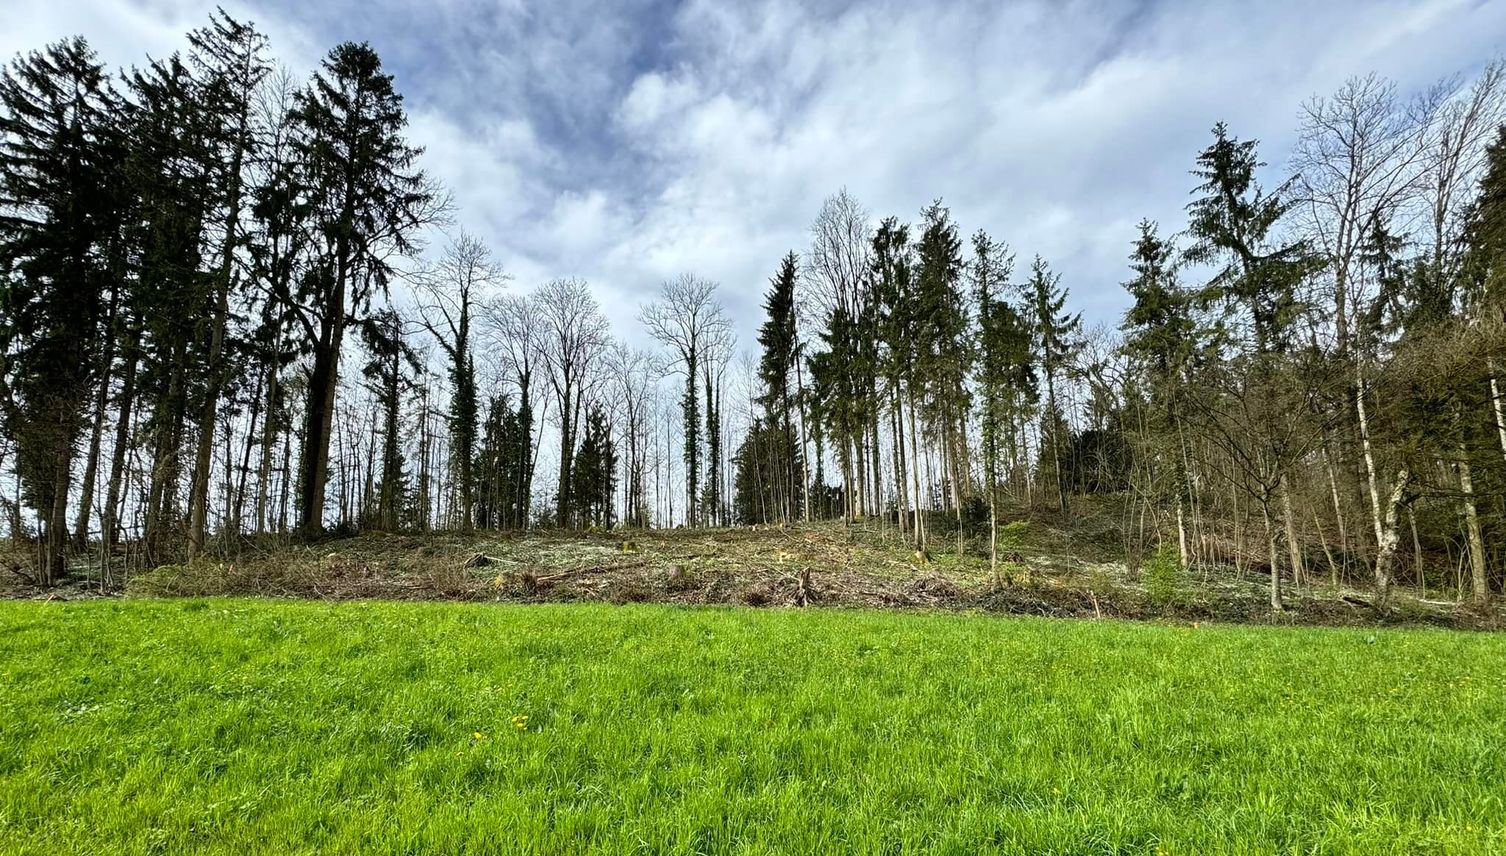 Zig Bäume gefällt – was geschieht in diesem Zuger Wald?